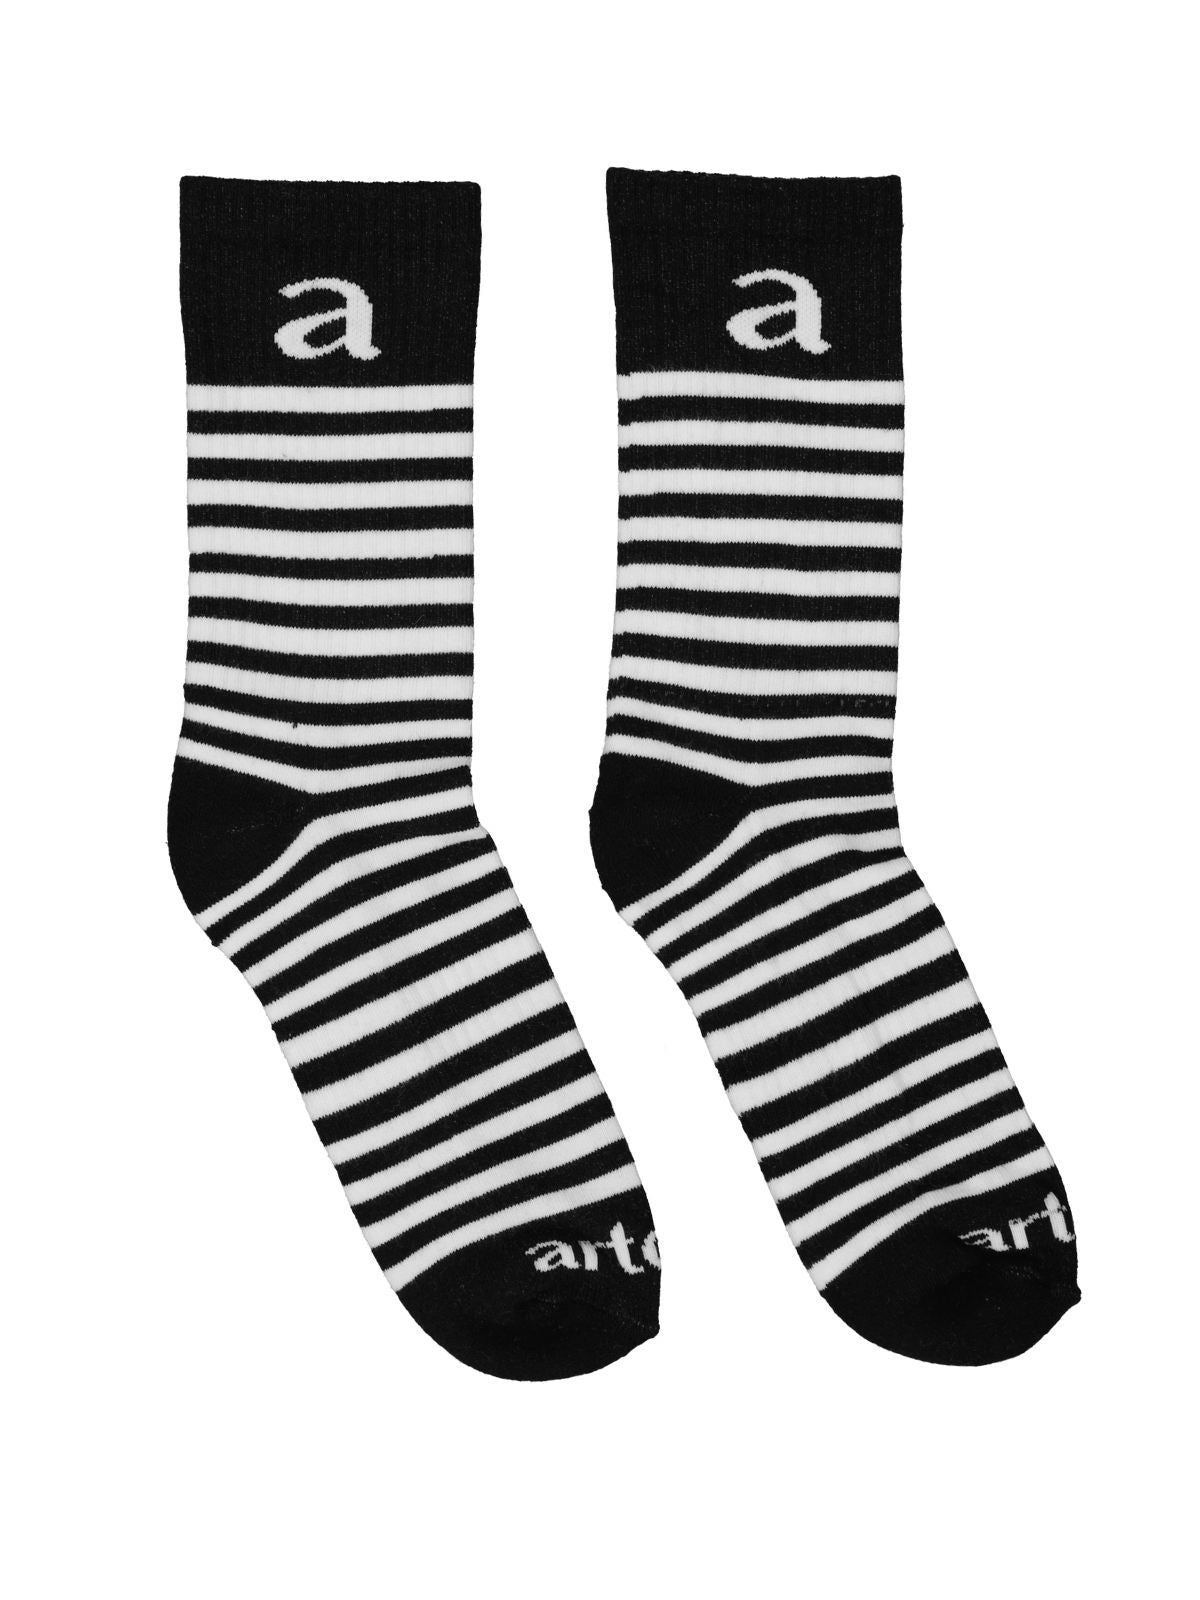 Stripe Crew Socks